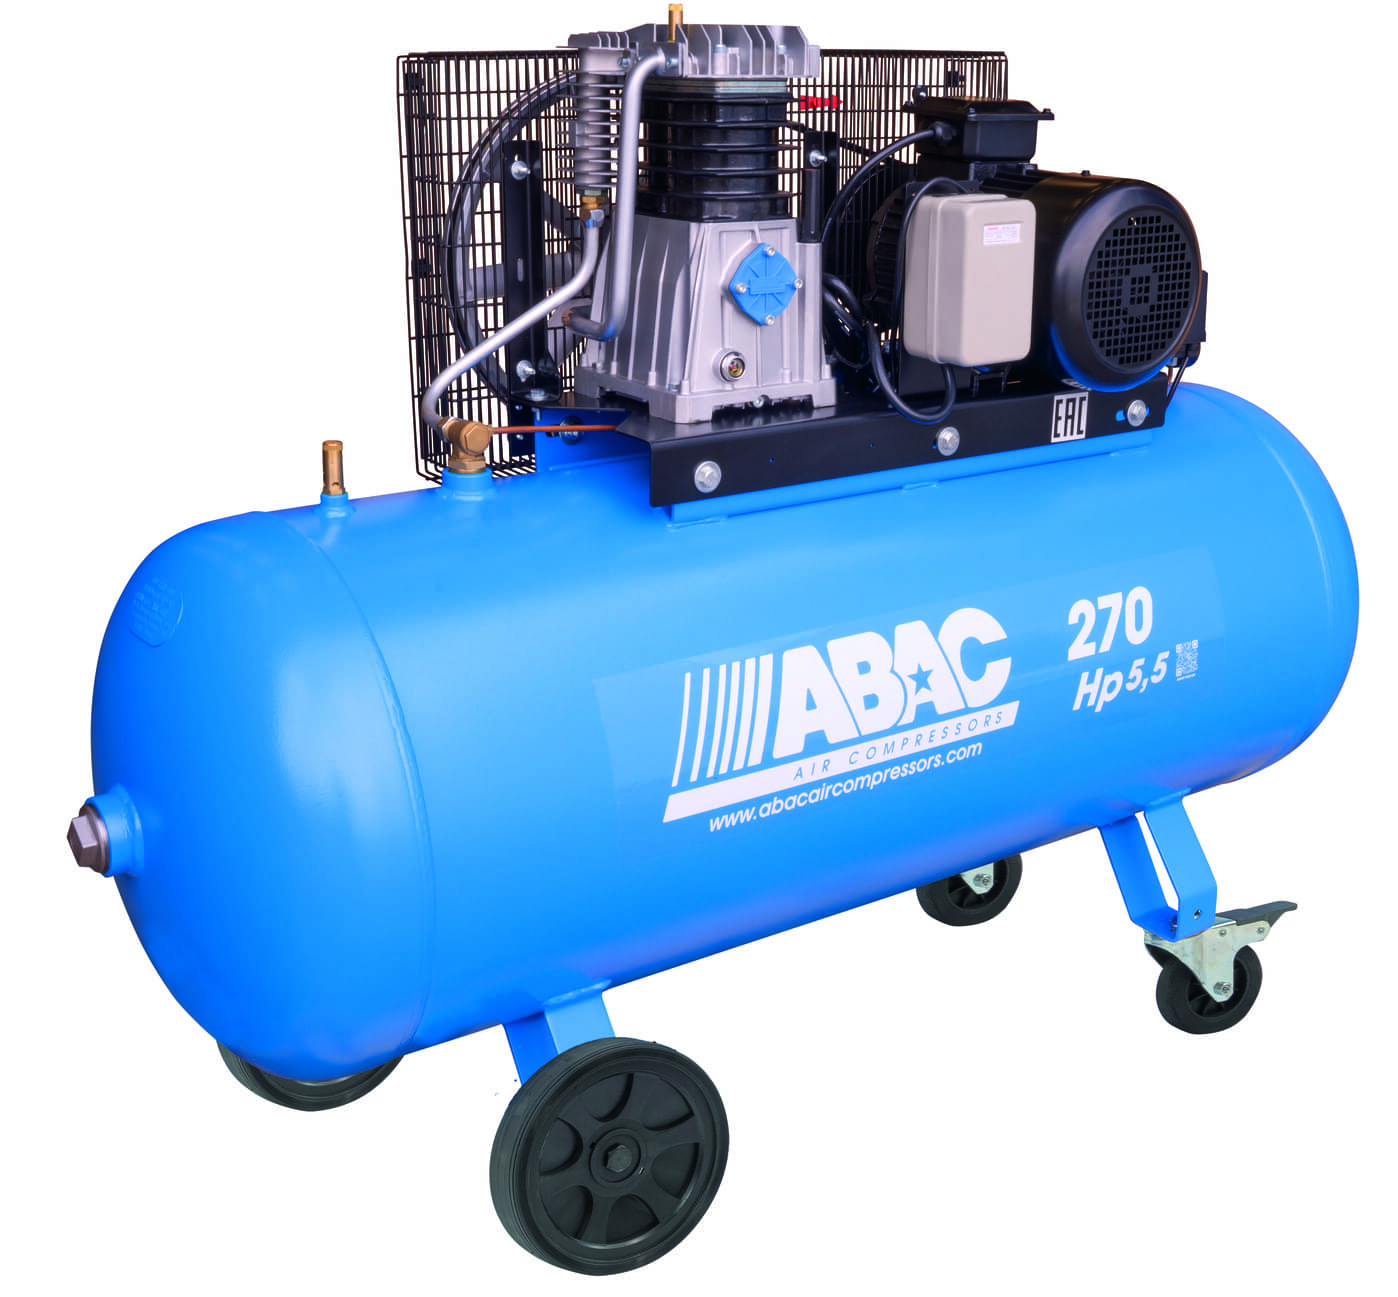 ABAC Kompresor Pro Line A49BX-4-270CT příkon 4 kW, sací výkon 595 l/min, tlak 11 bar, vzdušník 270 l, napětí 400/50 V/Hz